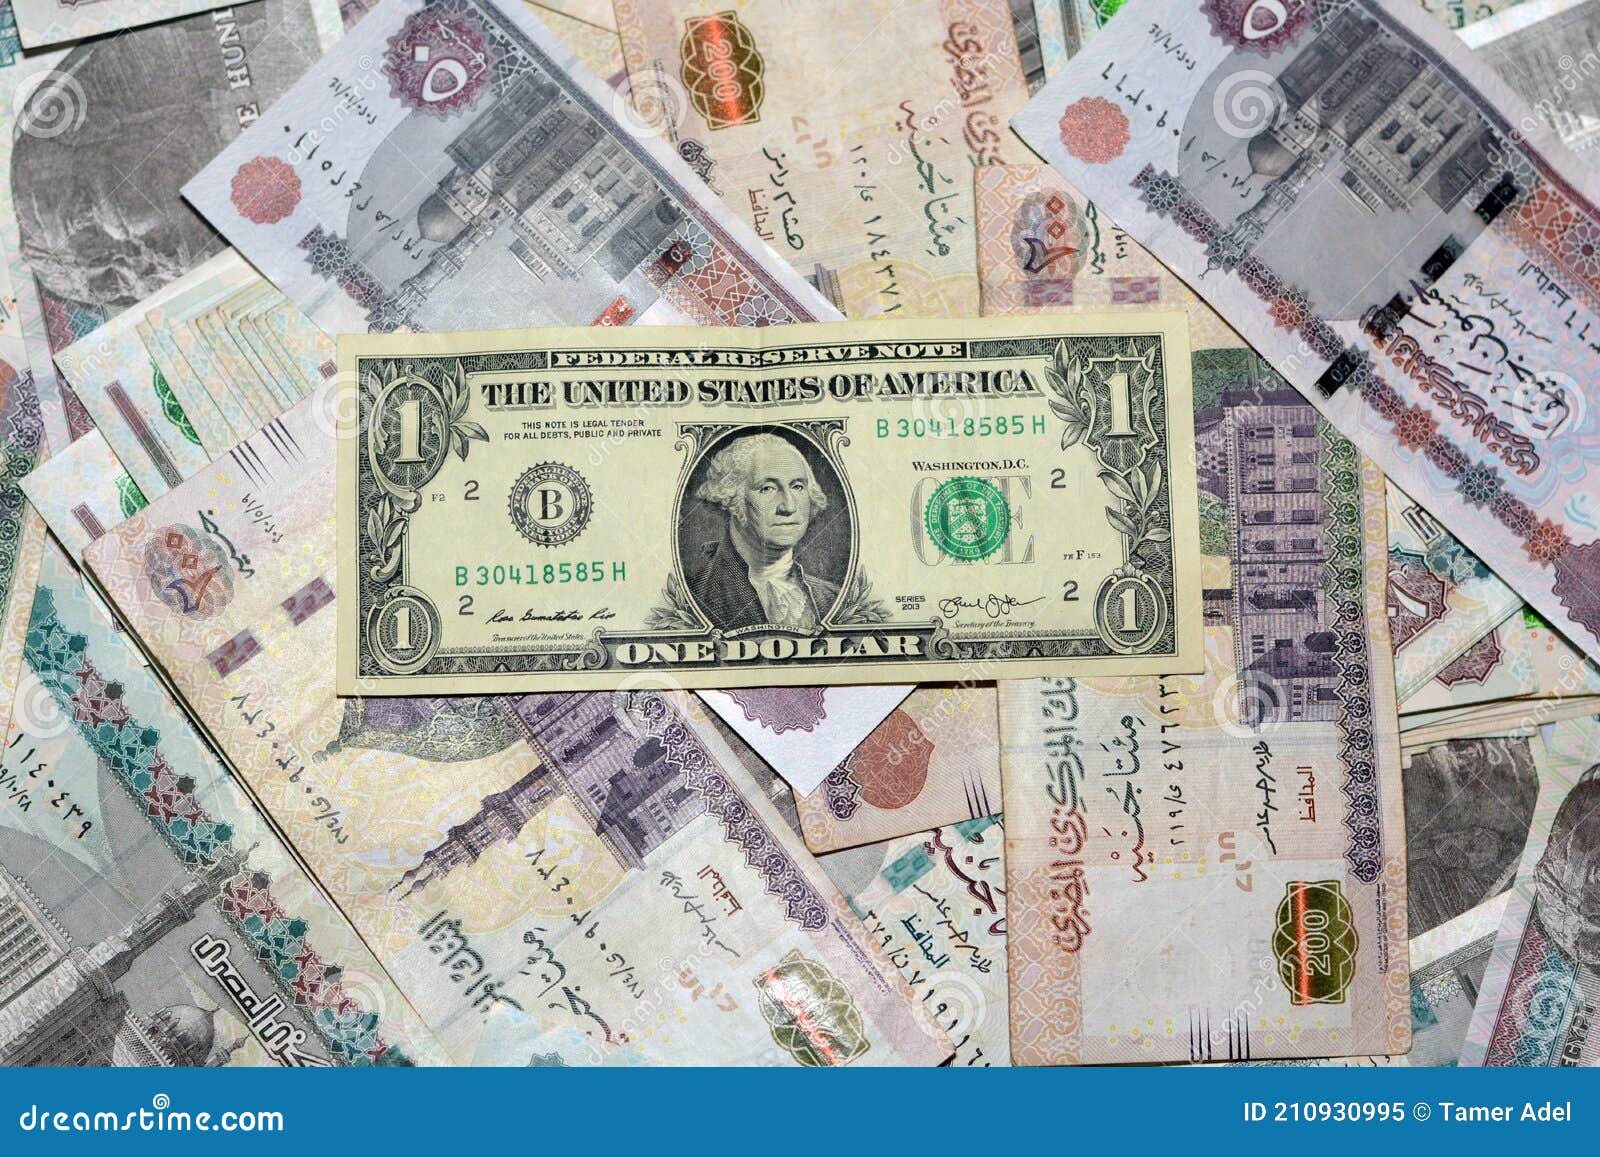 Доллары старого образца в египте принимают ли. Египетский доллар. Египетский фунт к доллару. Ветхие доллары. Египетские денежные купюры 200 фунтов.